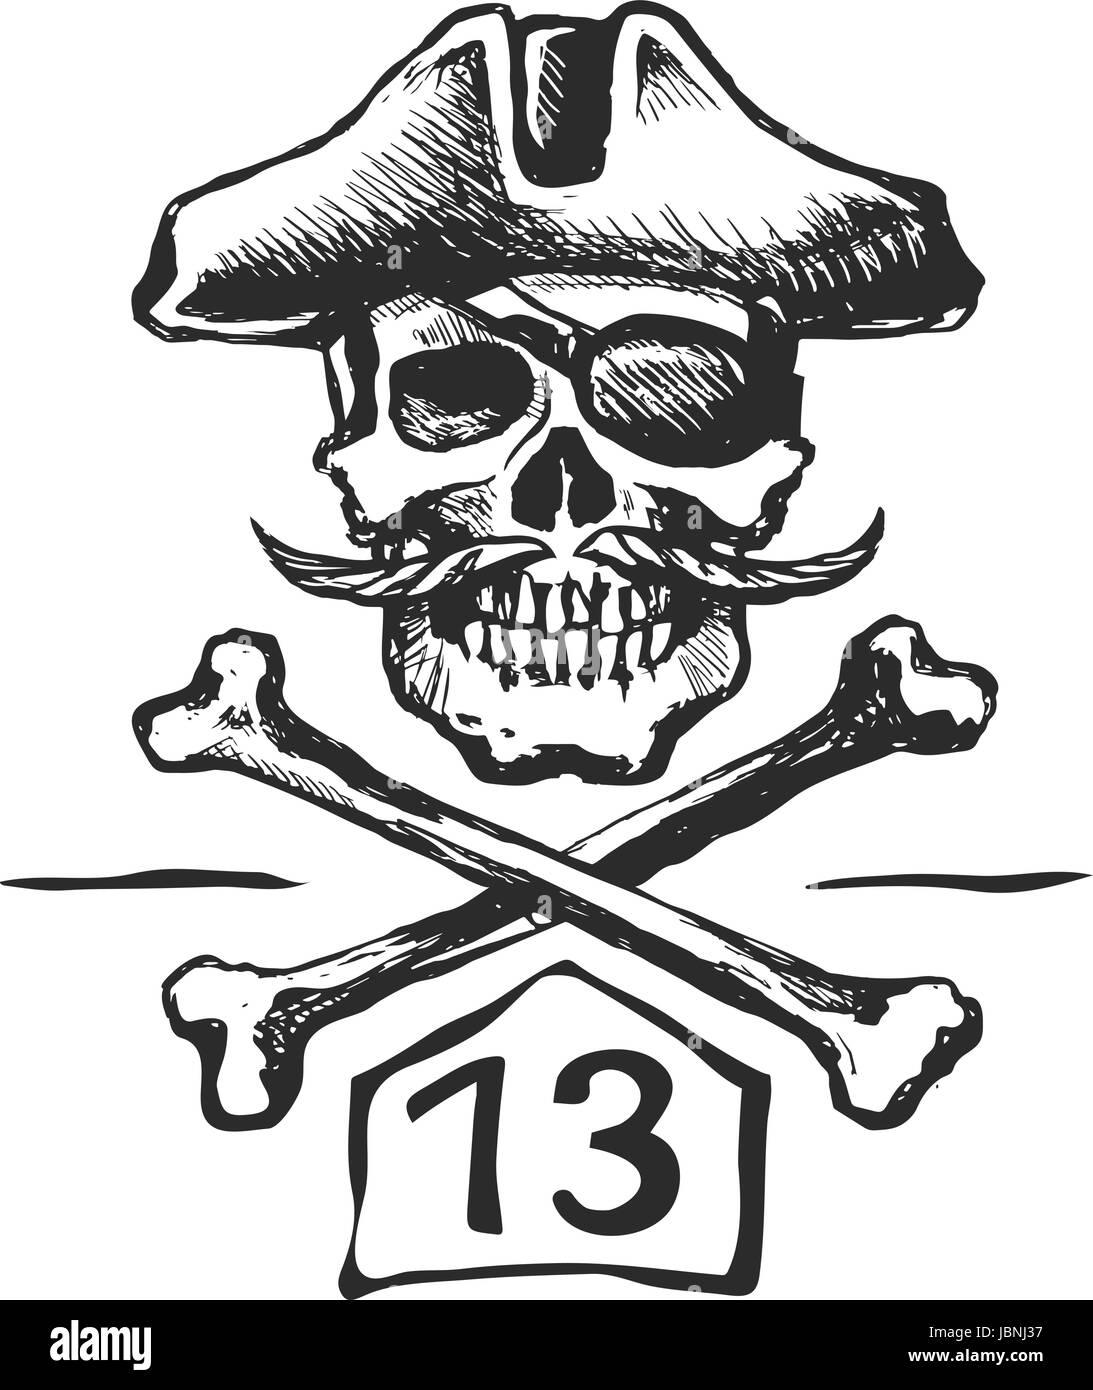 Piraten-Totenkopf mit einem Schnurrbart-Skizze Stock Vektor